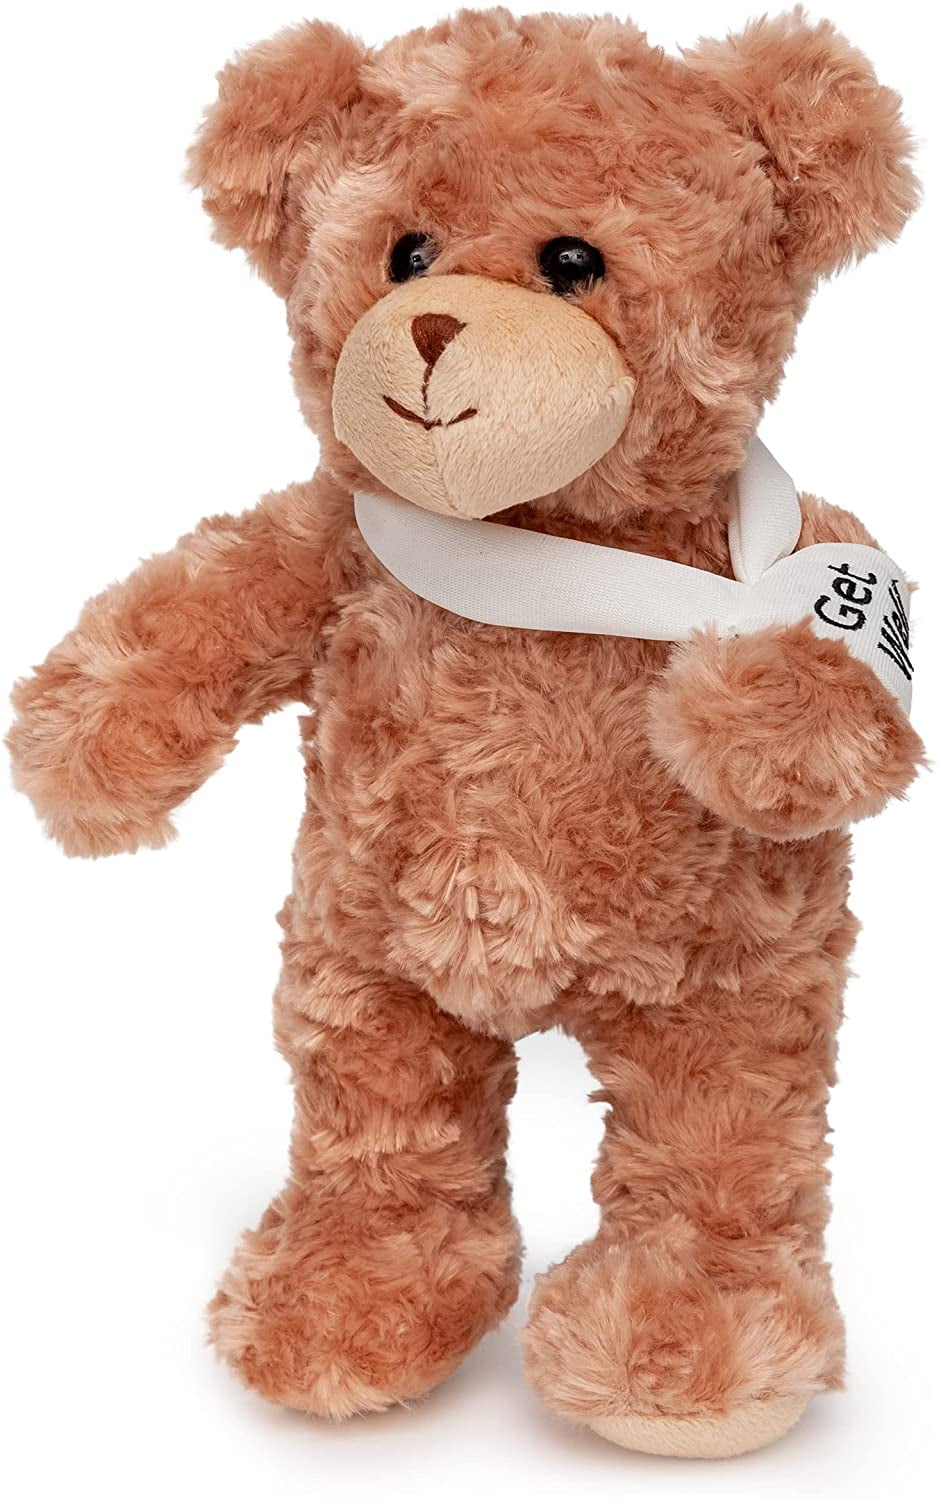 Teddy Bear Cute And Cuddly Gift Present Birthday Xmas NEW ELLIE 